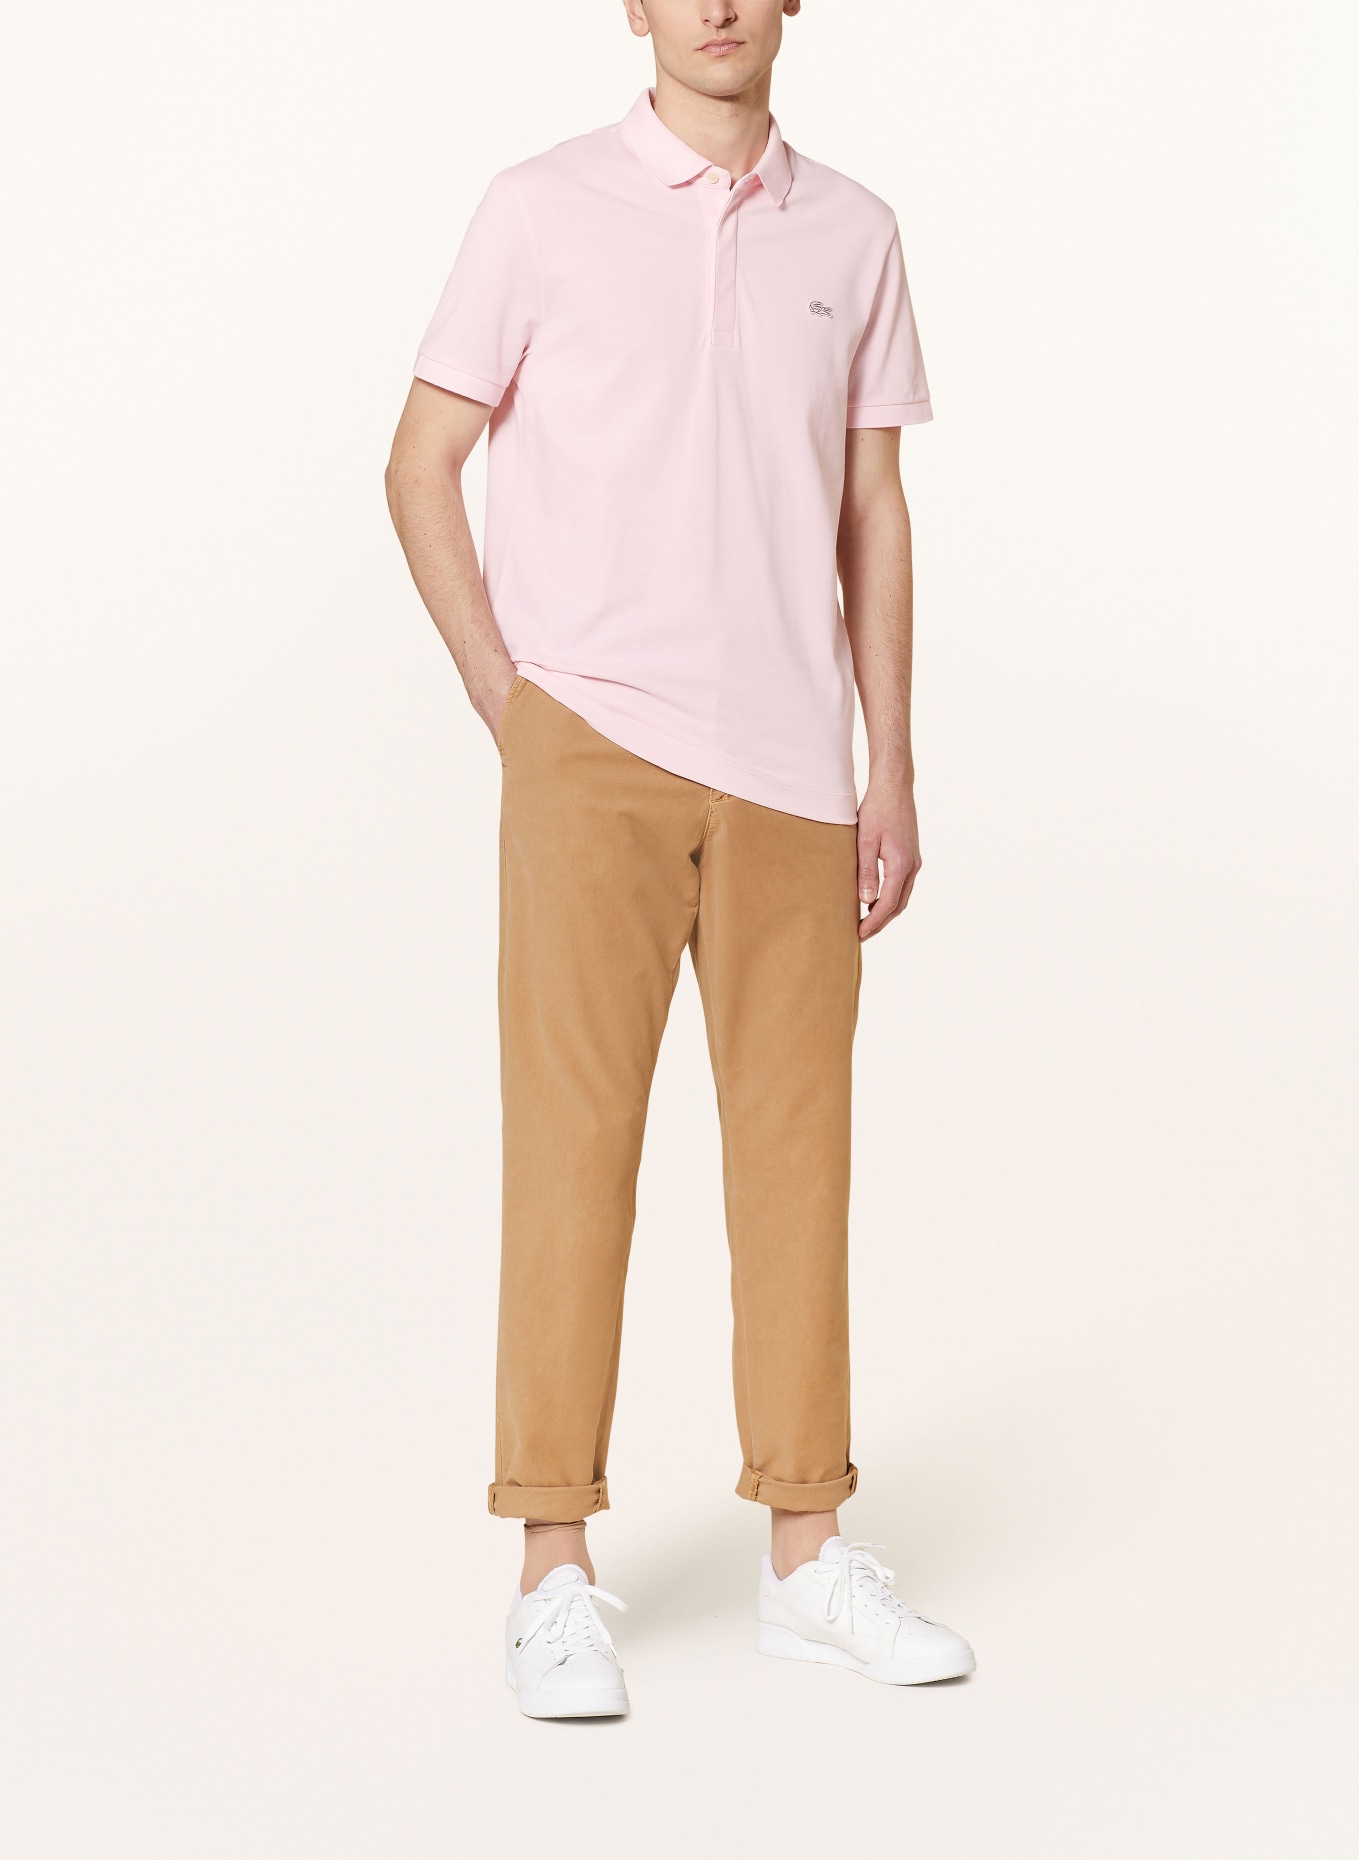 LACOSTE Piqué-Poloshirt, Farbe: ROSA (Bild 2)